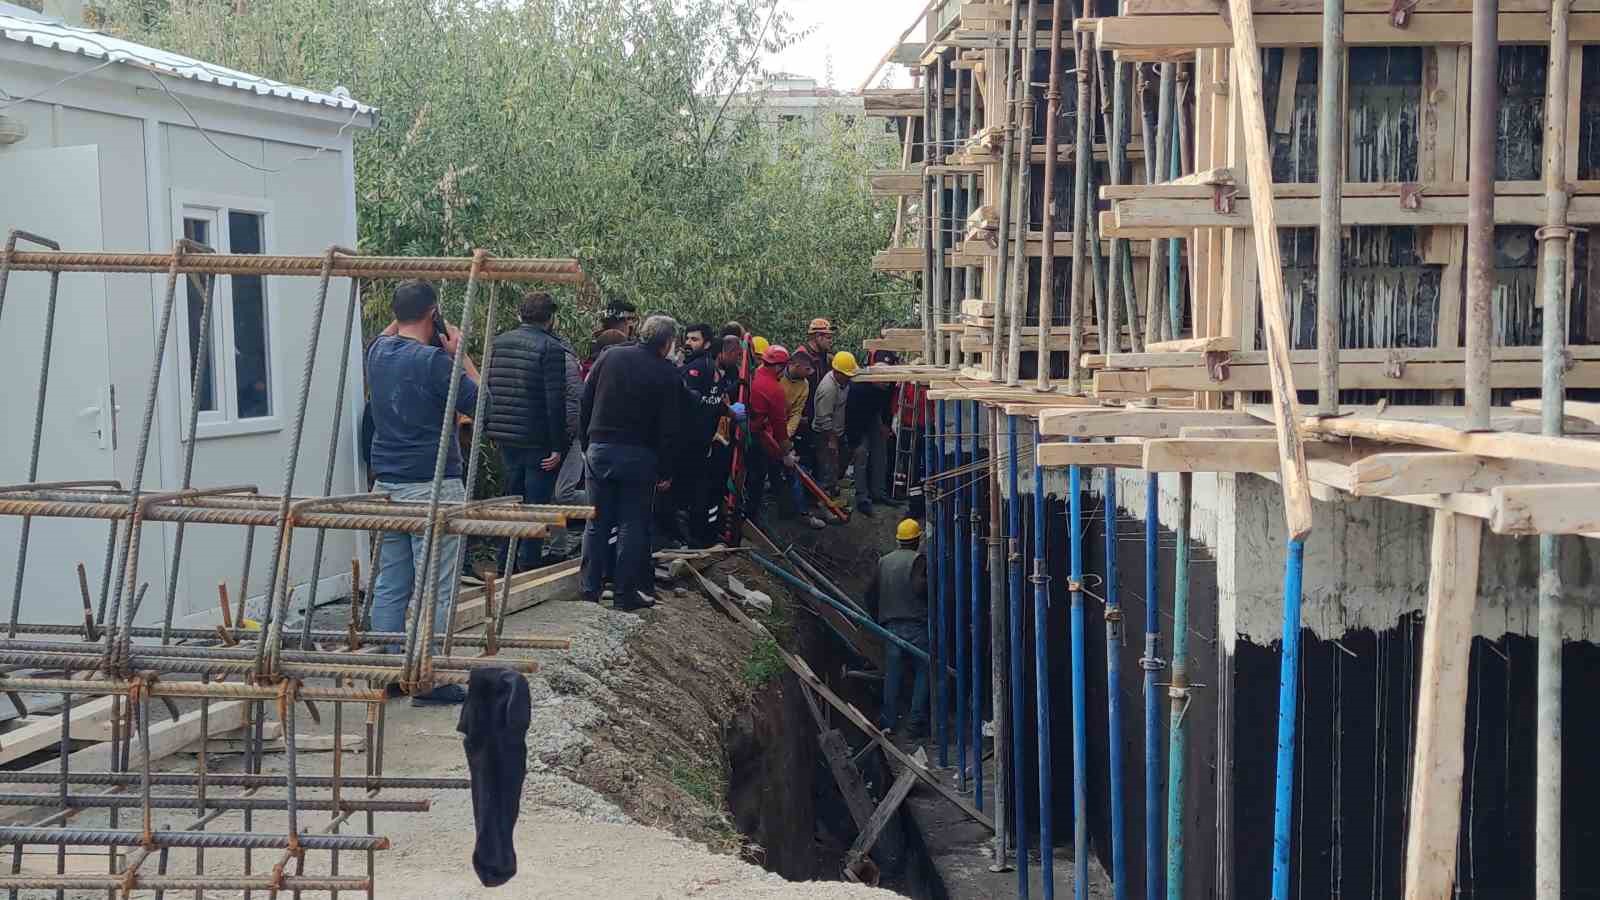 Van’da inşaat balkonu çöktü: 1 yaralı